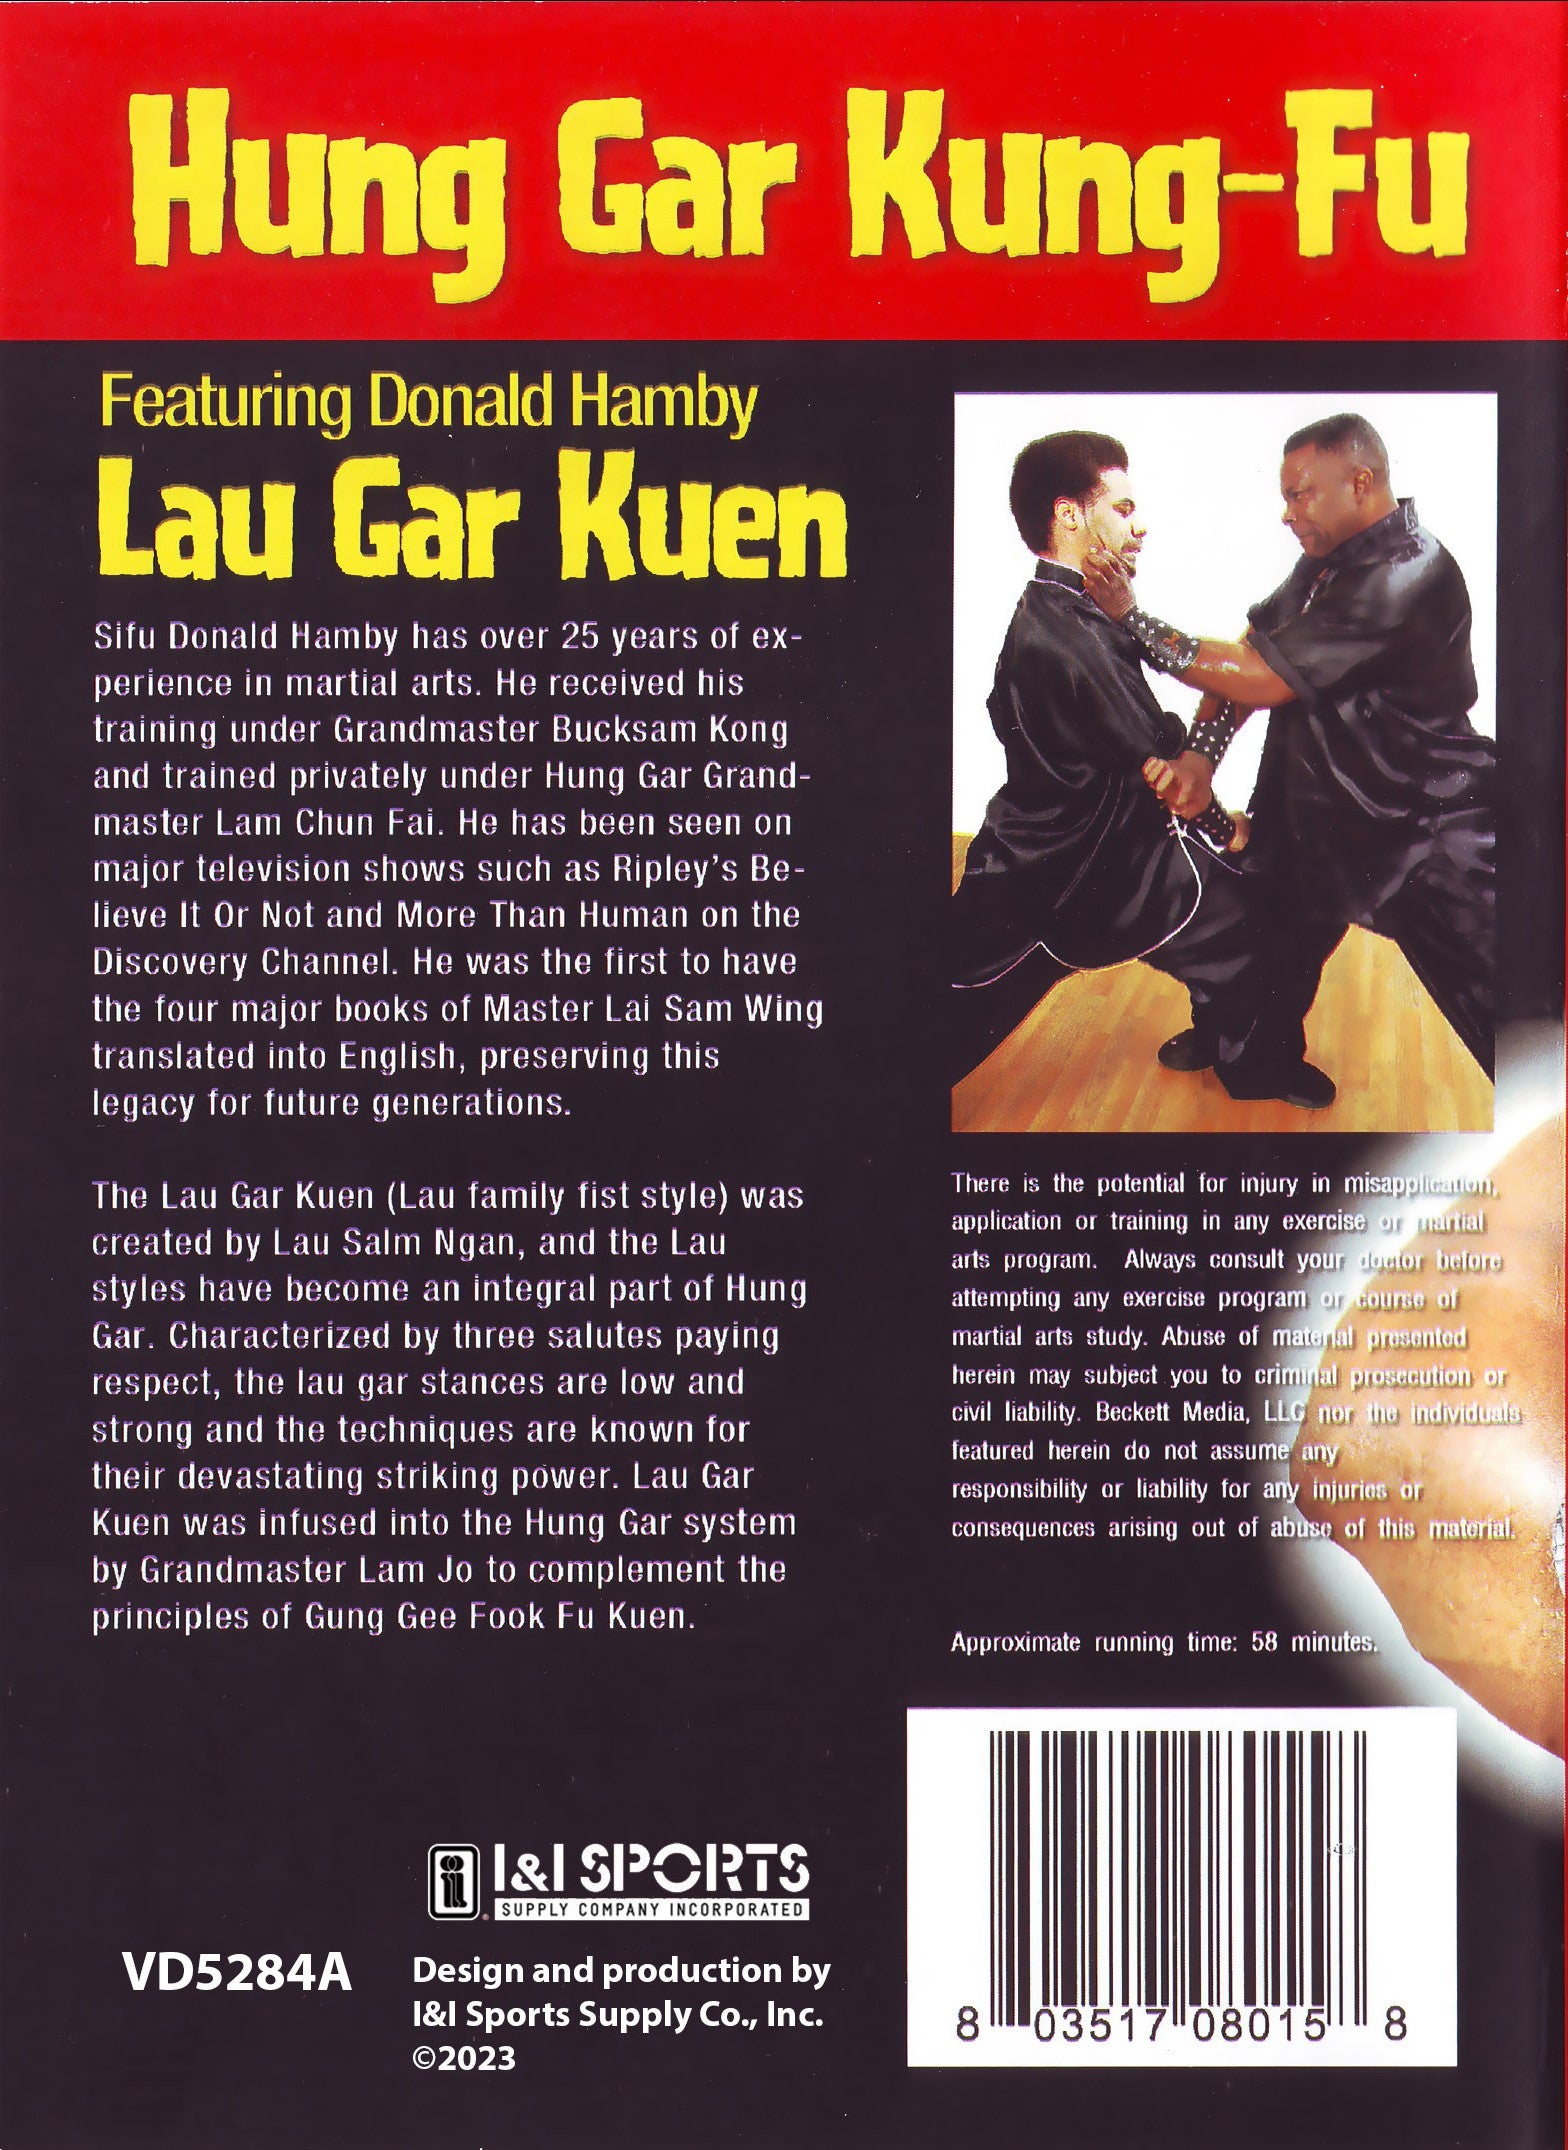 Shaolin Hung Gar Kung Fu Lar Gar Kuen Lau Salm Ngan DVD Donald Hamby martial art